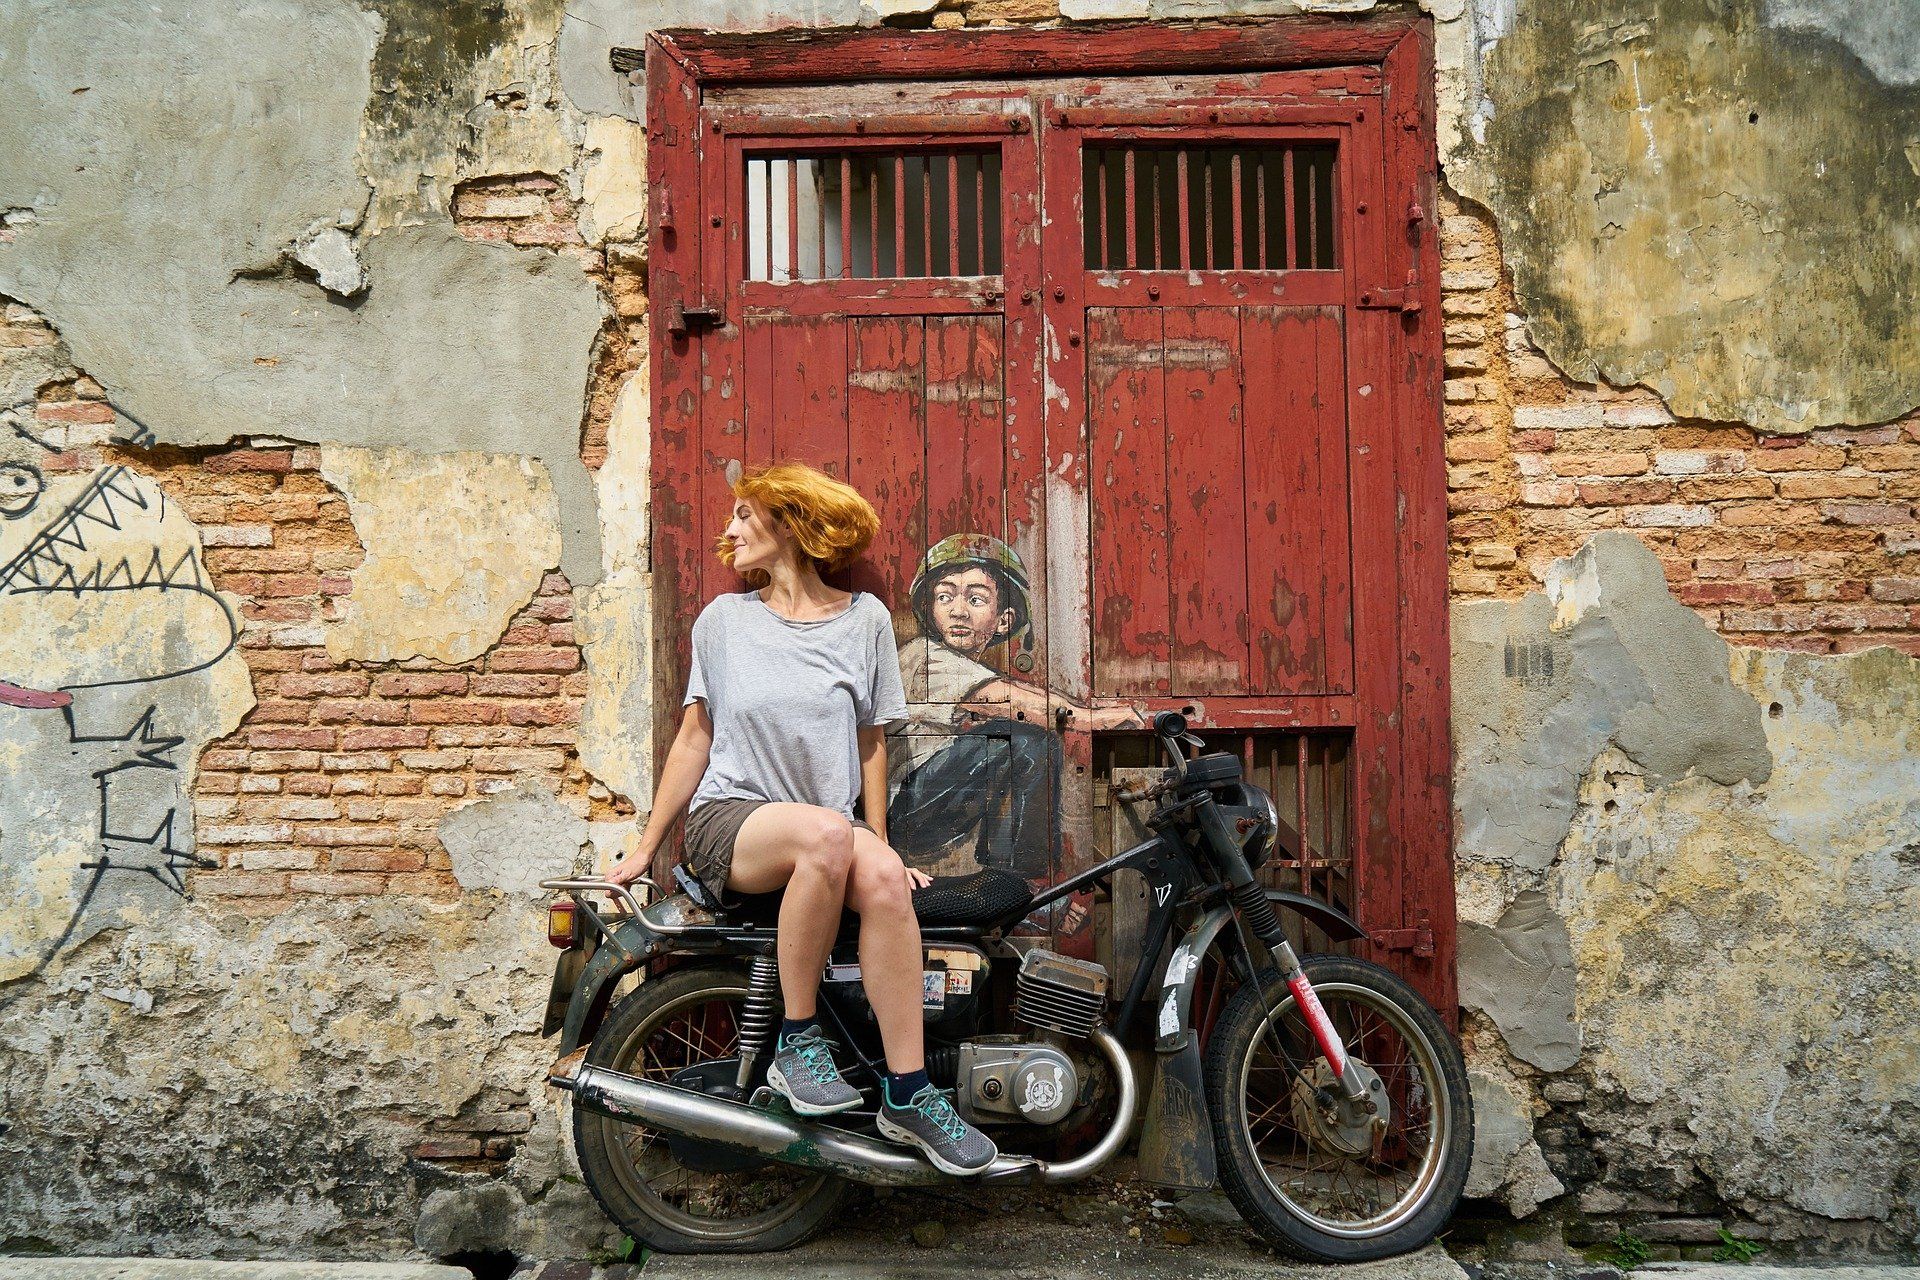 Ilustrasi perempuan sedang naik motor